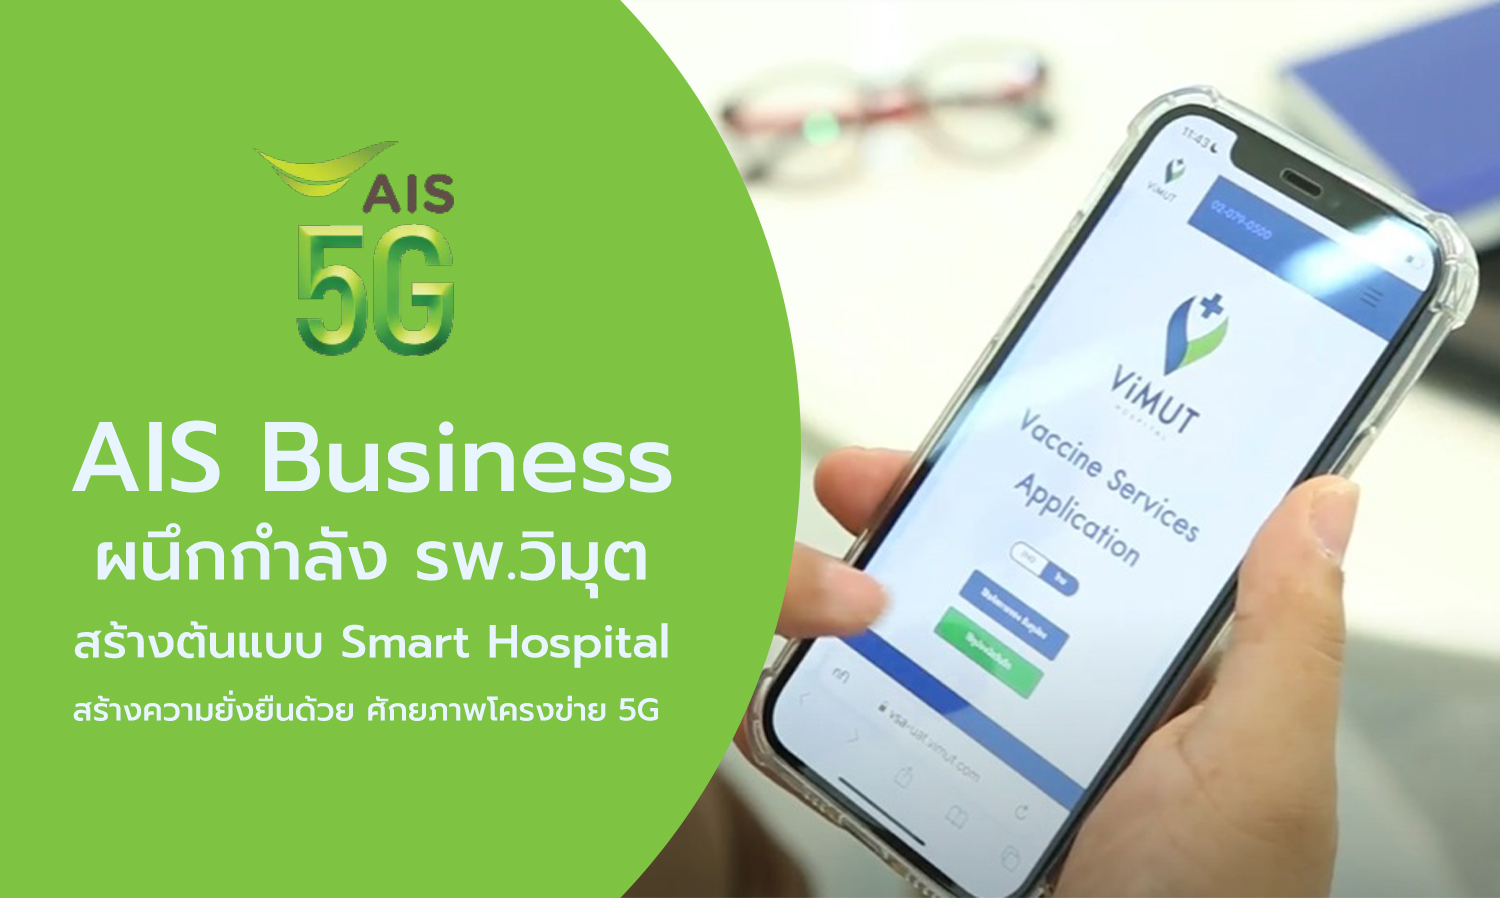 AIS Business ผนึกกำลัง รพ.วิมุต สร้างต้นแบบ Smart Hospital สร้างความยั่งยืนด้วย ศักยภาพโครงข่าย 5G โซลูชัน และดิจิทัล เซอร์วิส